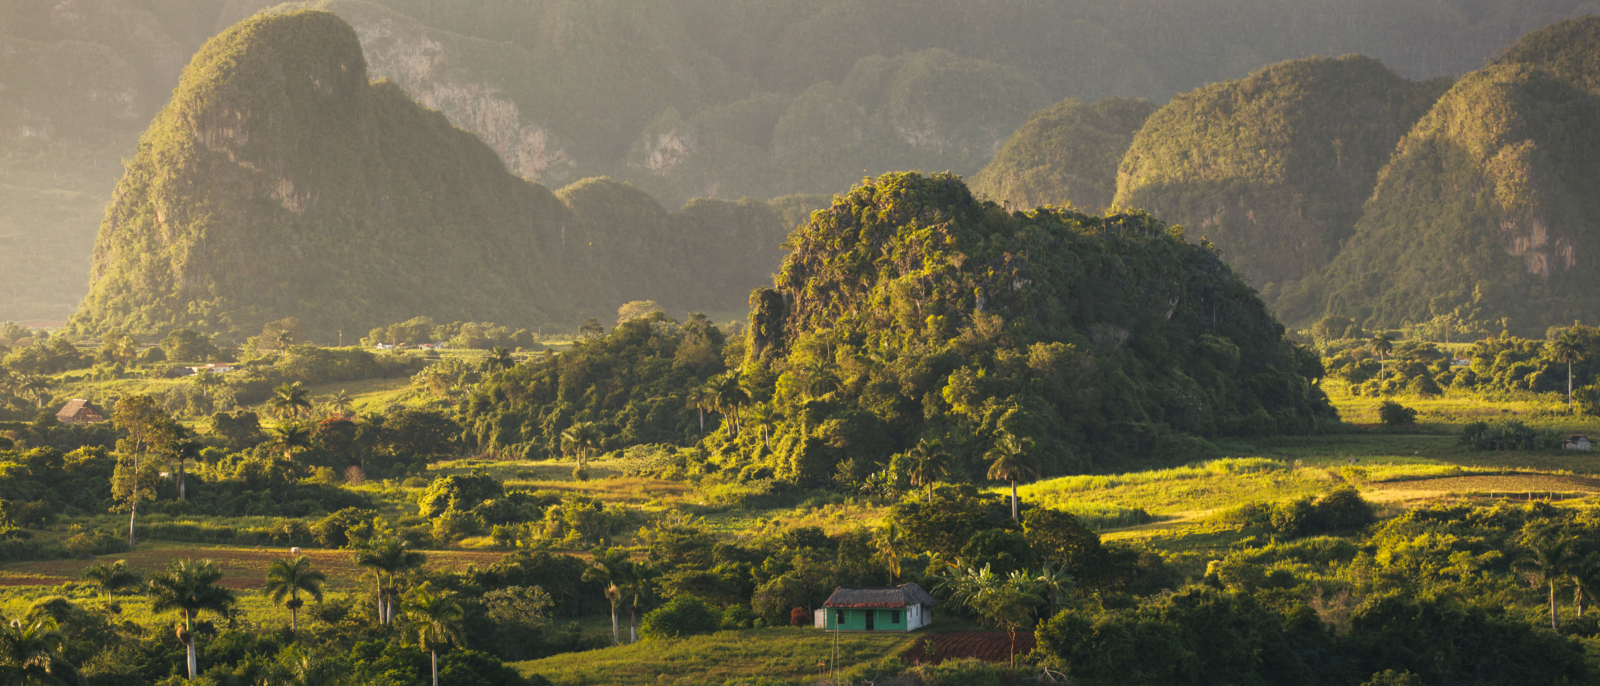 Vue panoramique sur un paysage avec des mogotes dans la vallée de Vinales, Cuba